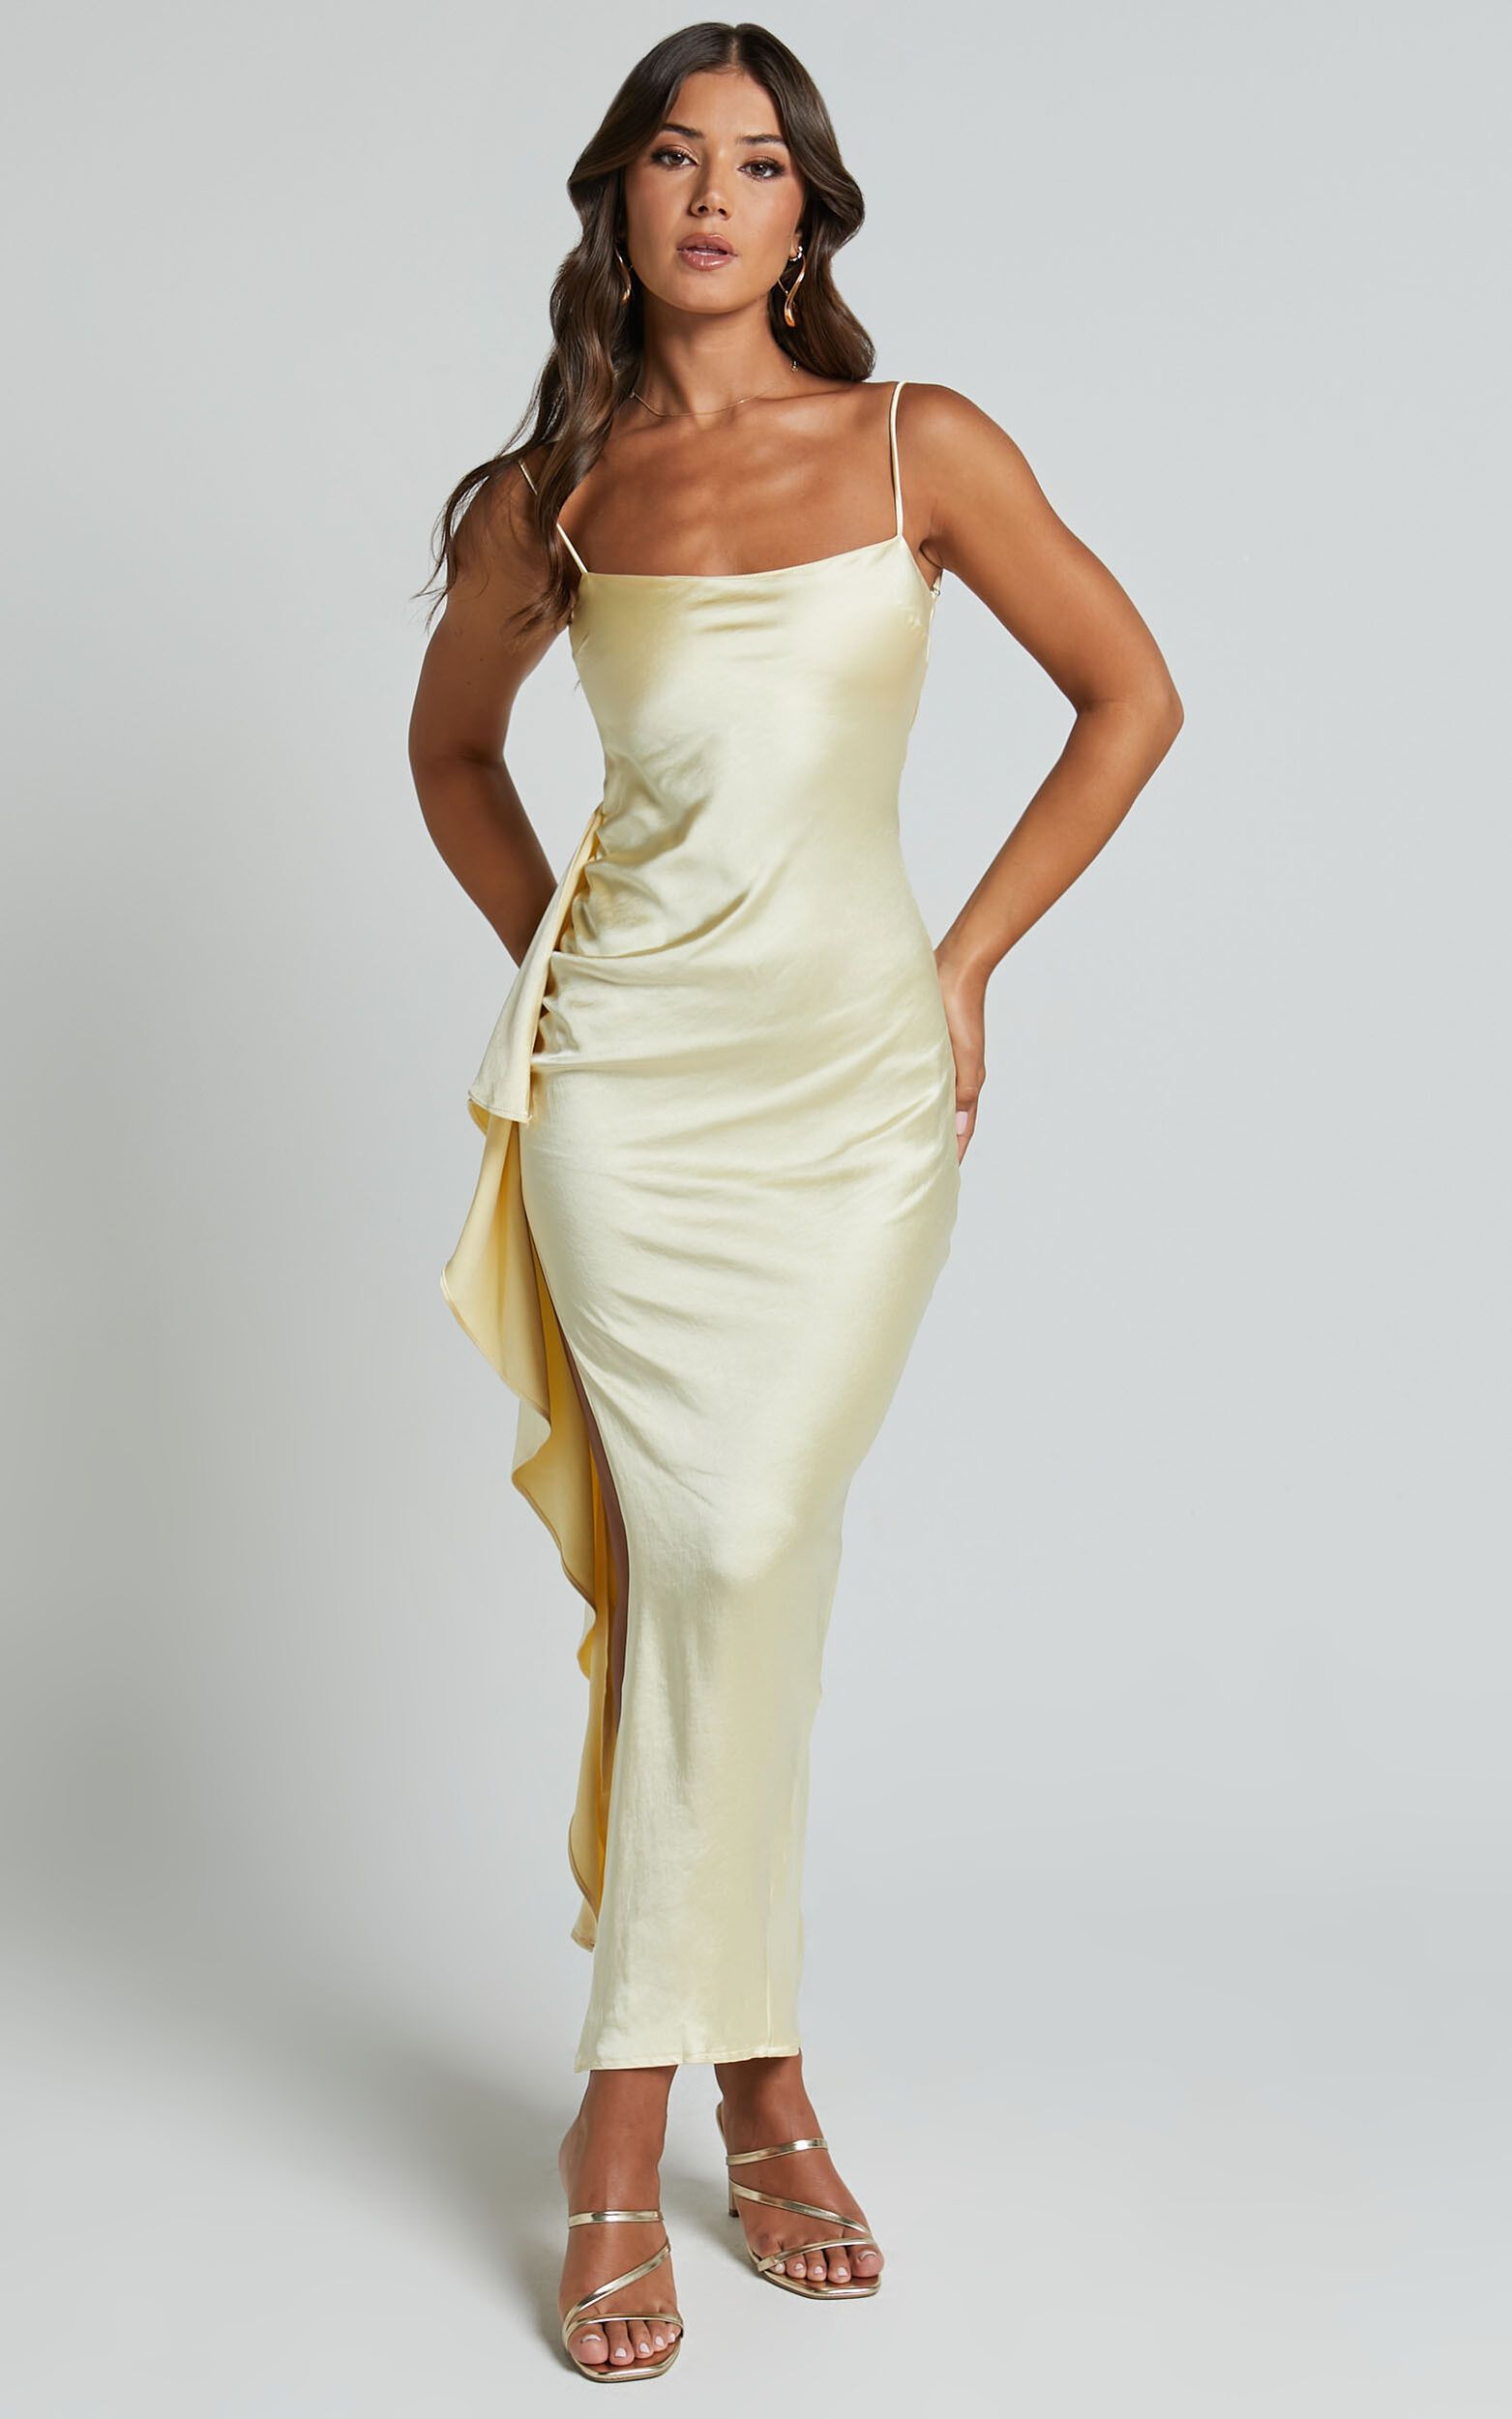 Carolina Maxi Dress - Frill Detail Satin Square Neck Dress in Lemon | Showpo (US, UK & Europe)